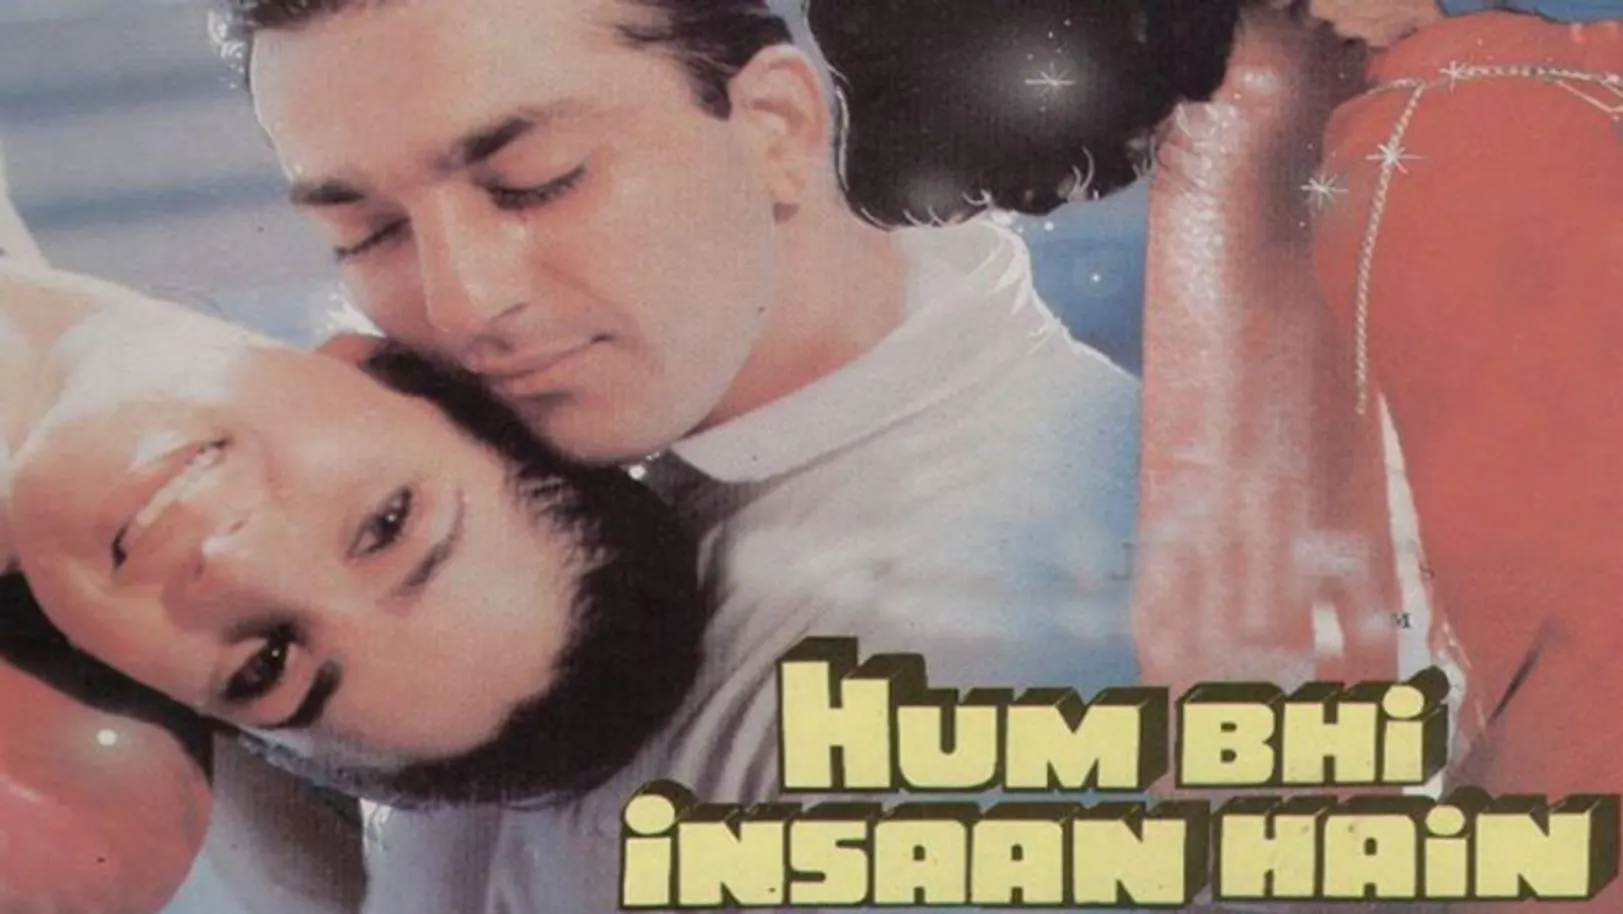 Hum Bhi Insaan Hai Movie